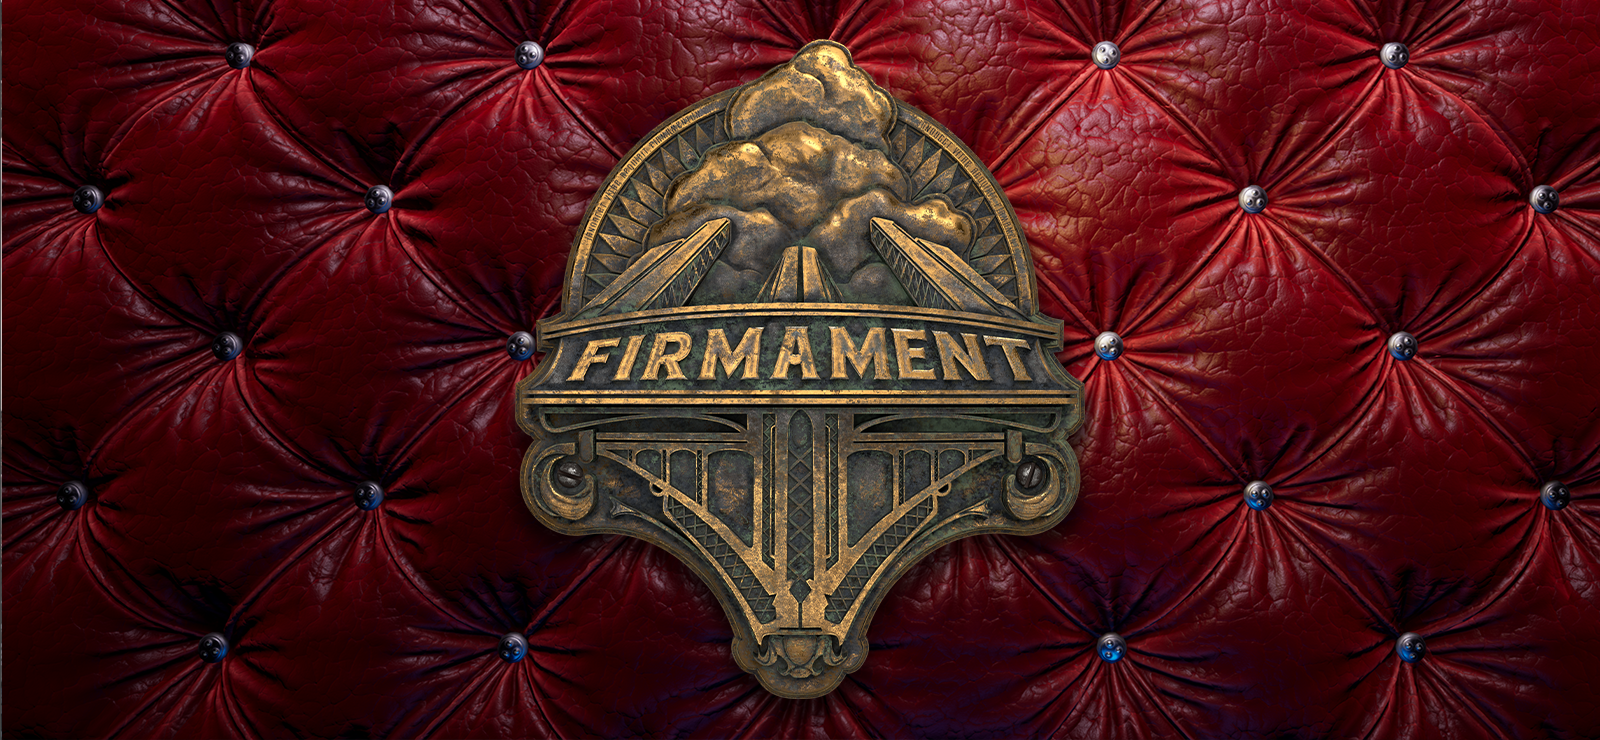 Firmament - Digital Art Book